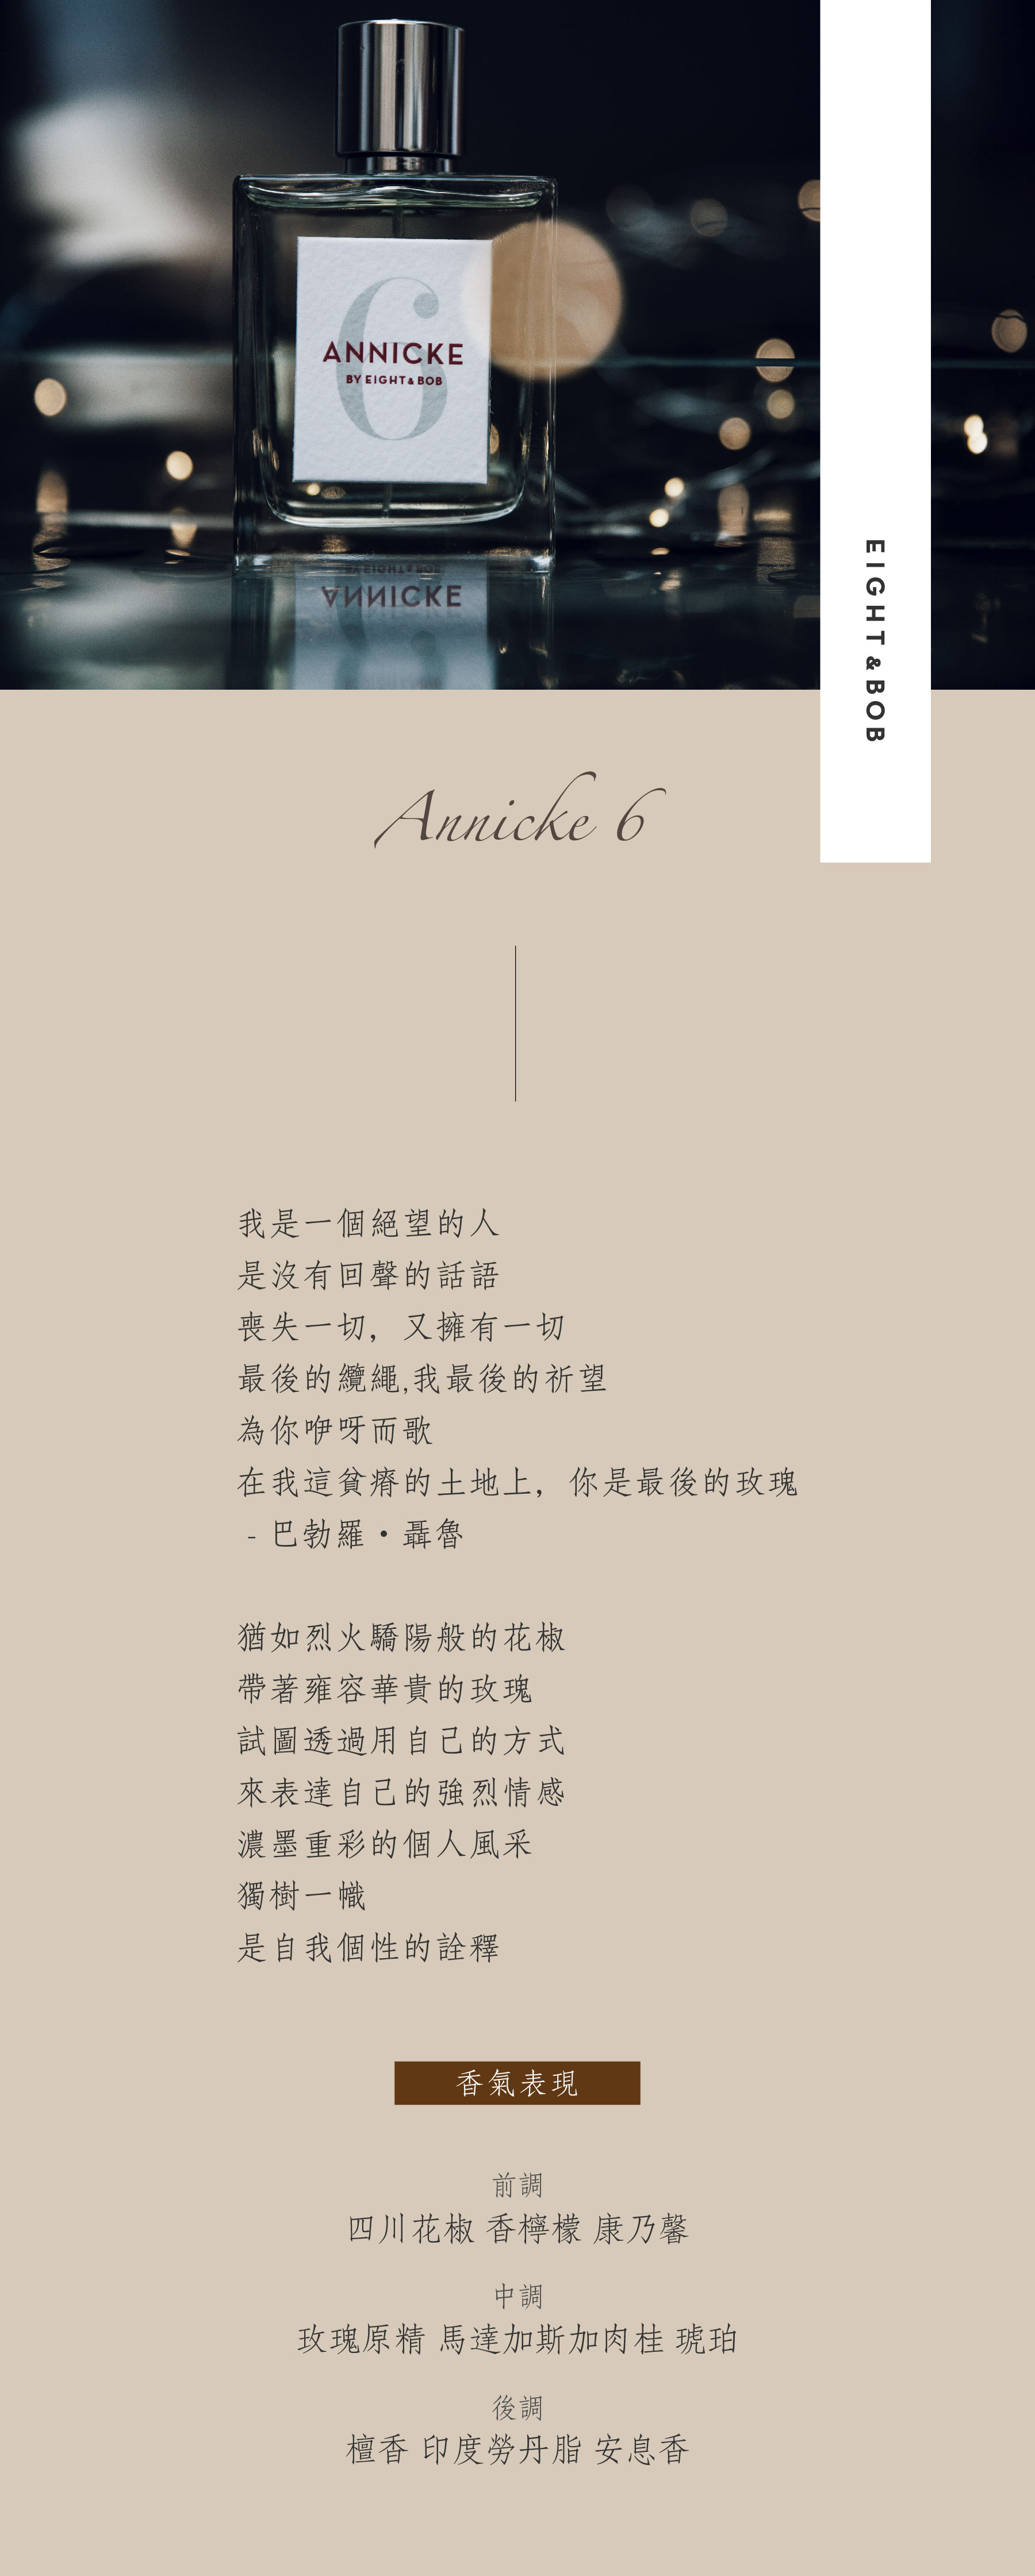 EightBob Annicke 6 1